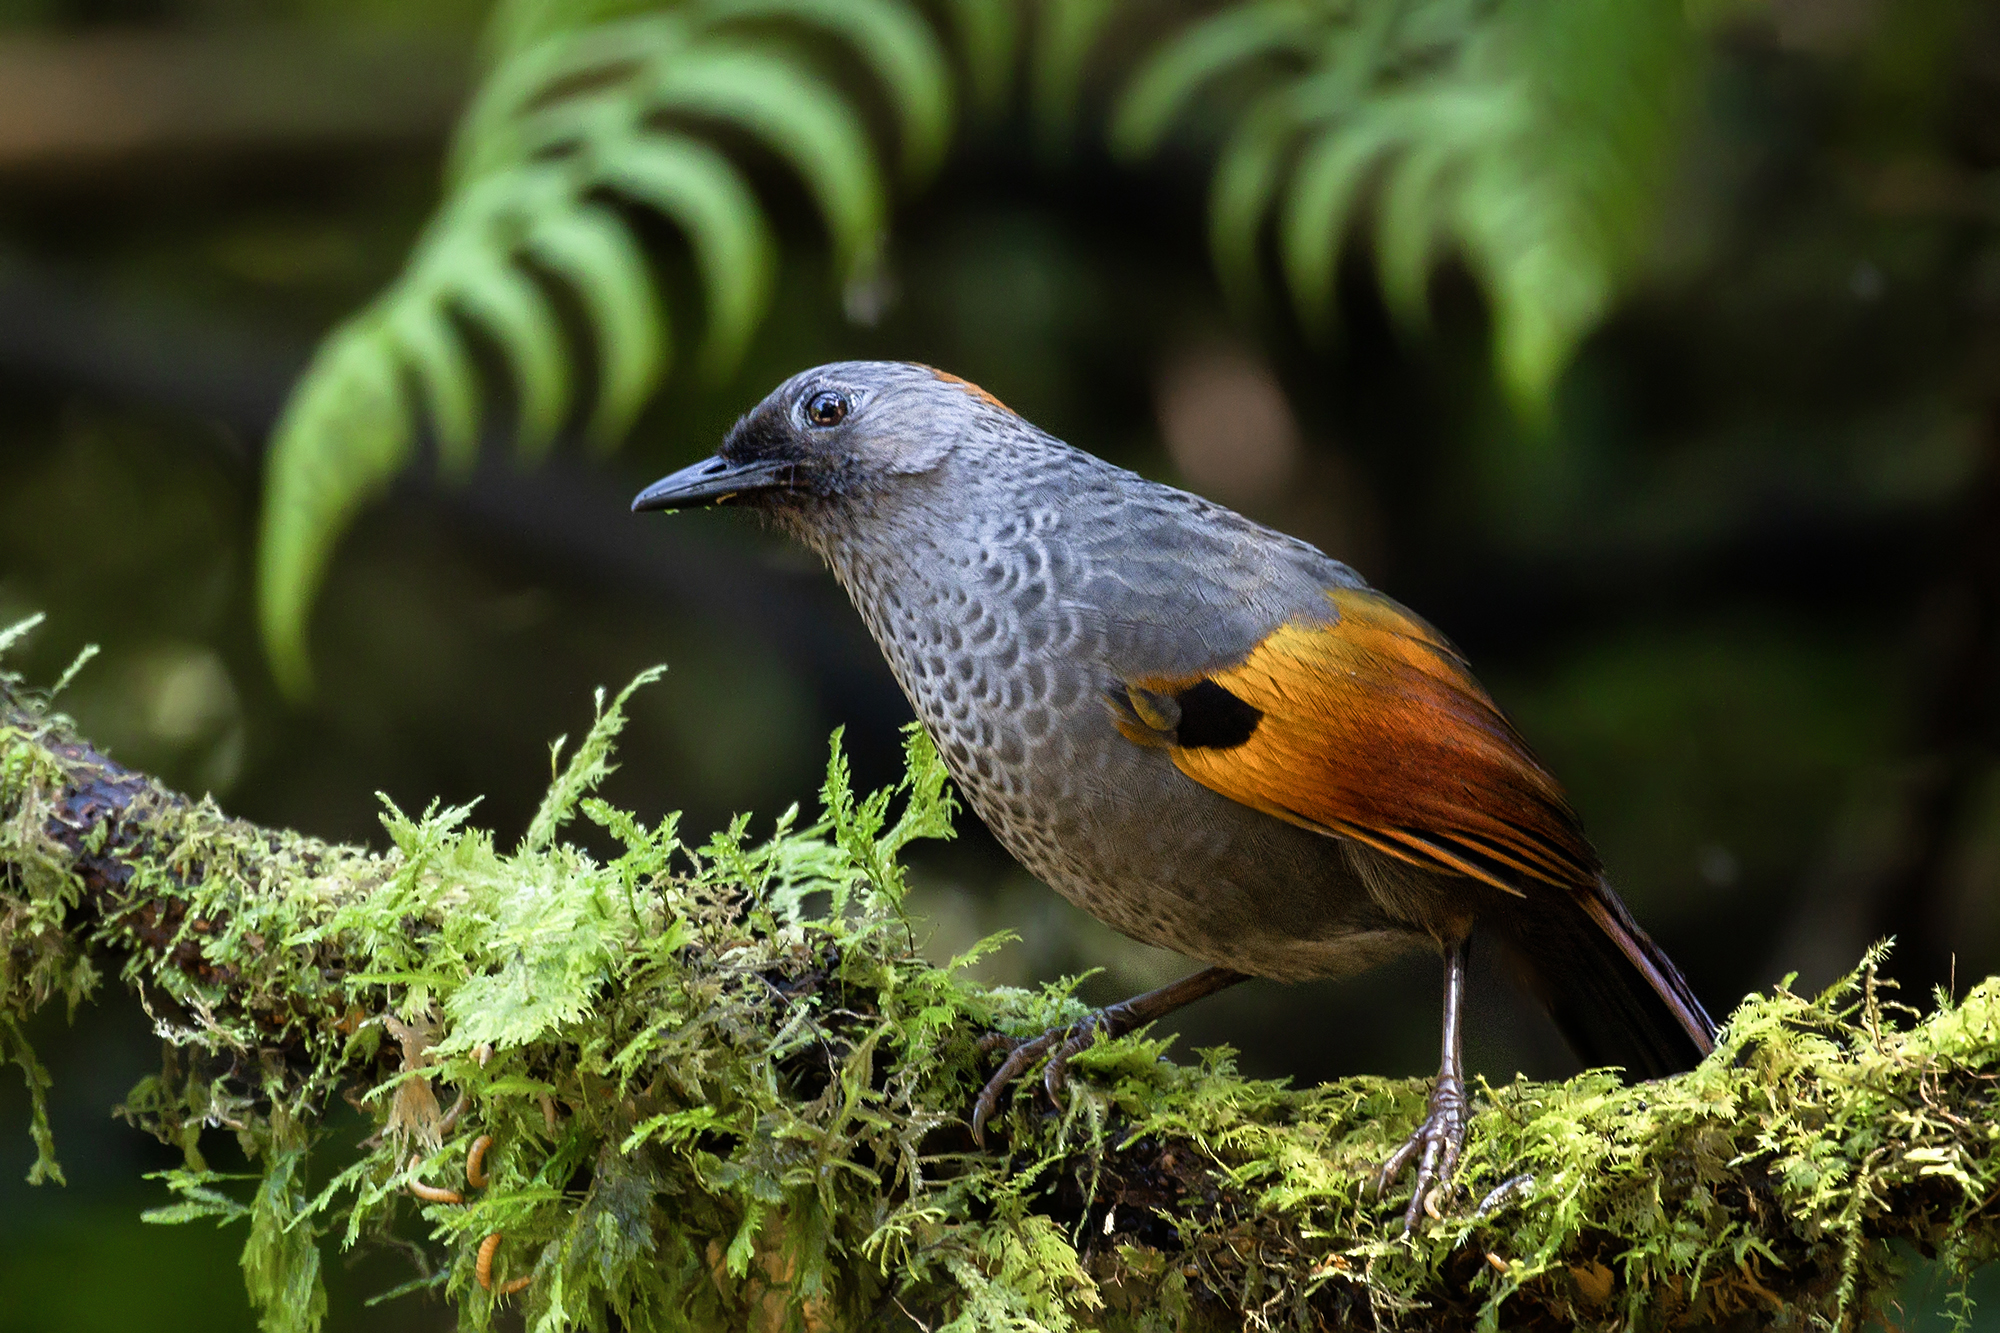 Nền Hình ảnh Các Loài Chim Quý Hiếm Và động Vật Quý Hiếm Và Hình ảnh Để Tải  Về Miễn Phí - Pngtree